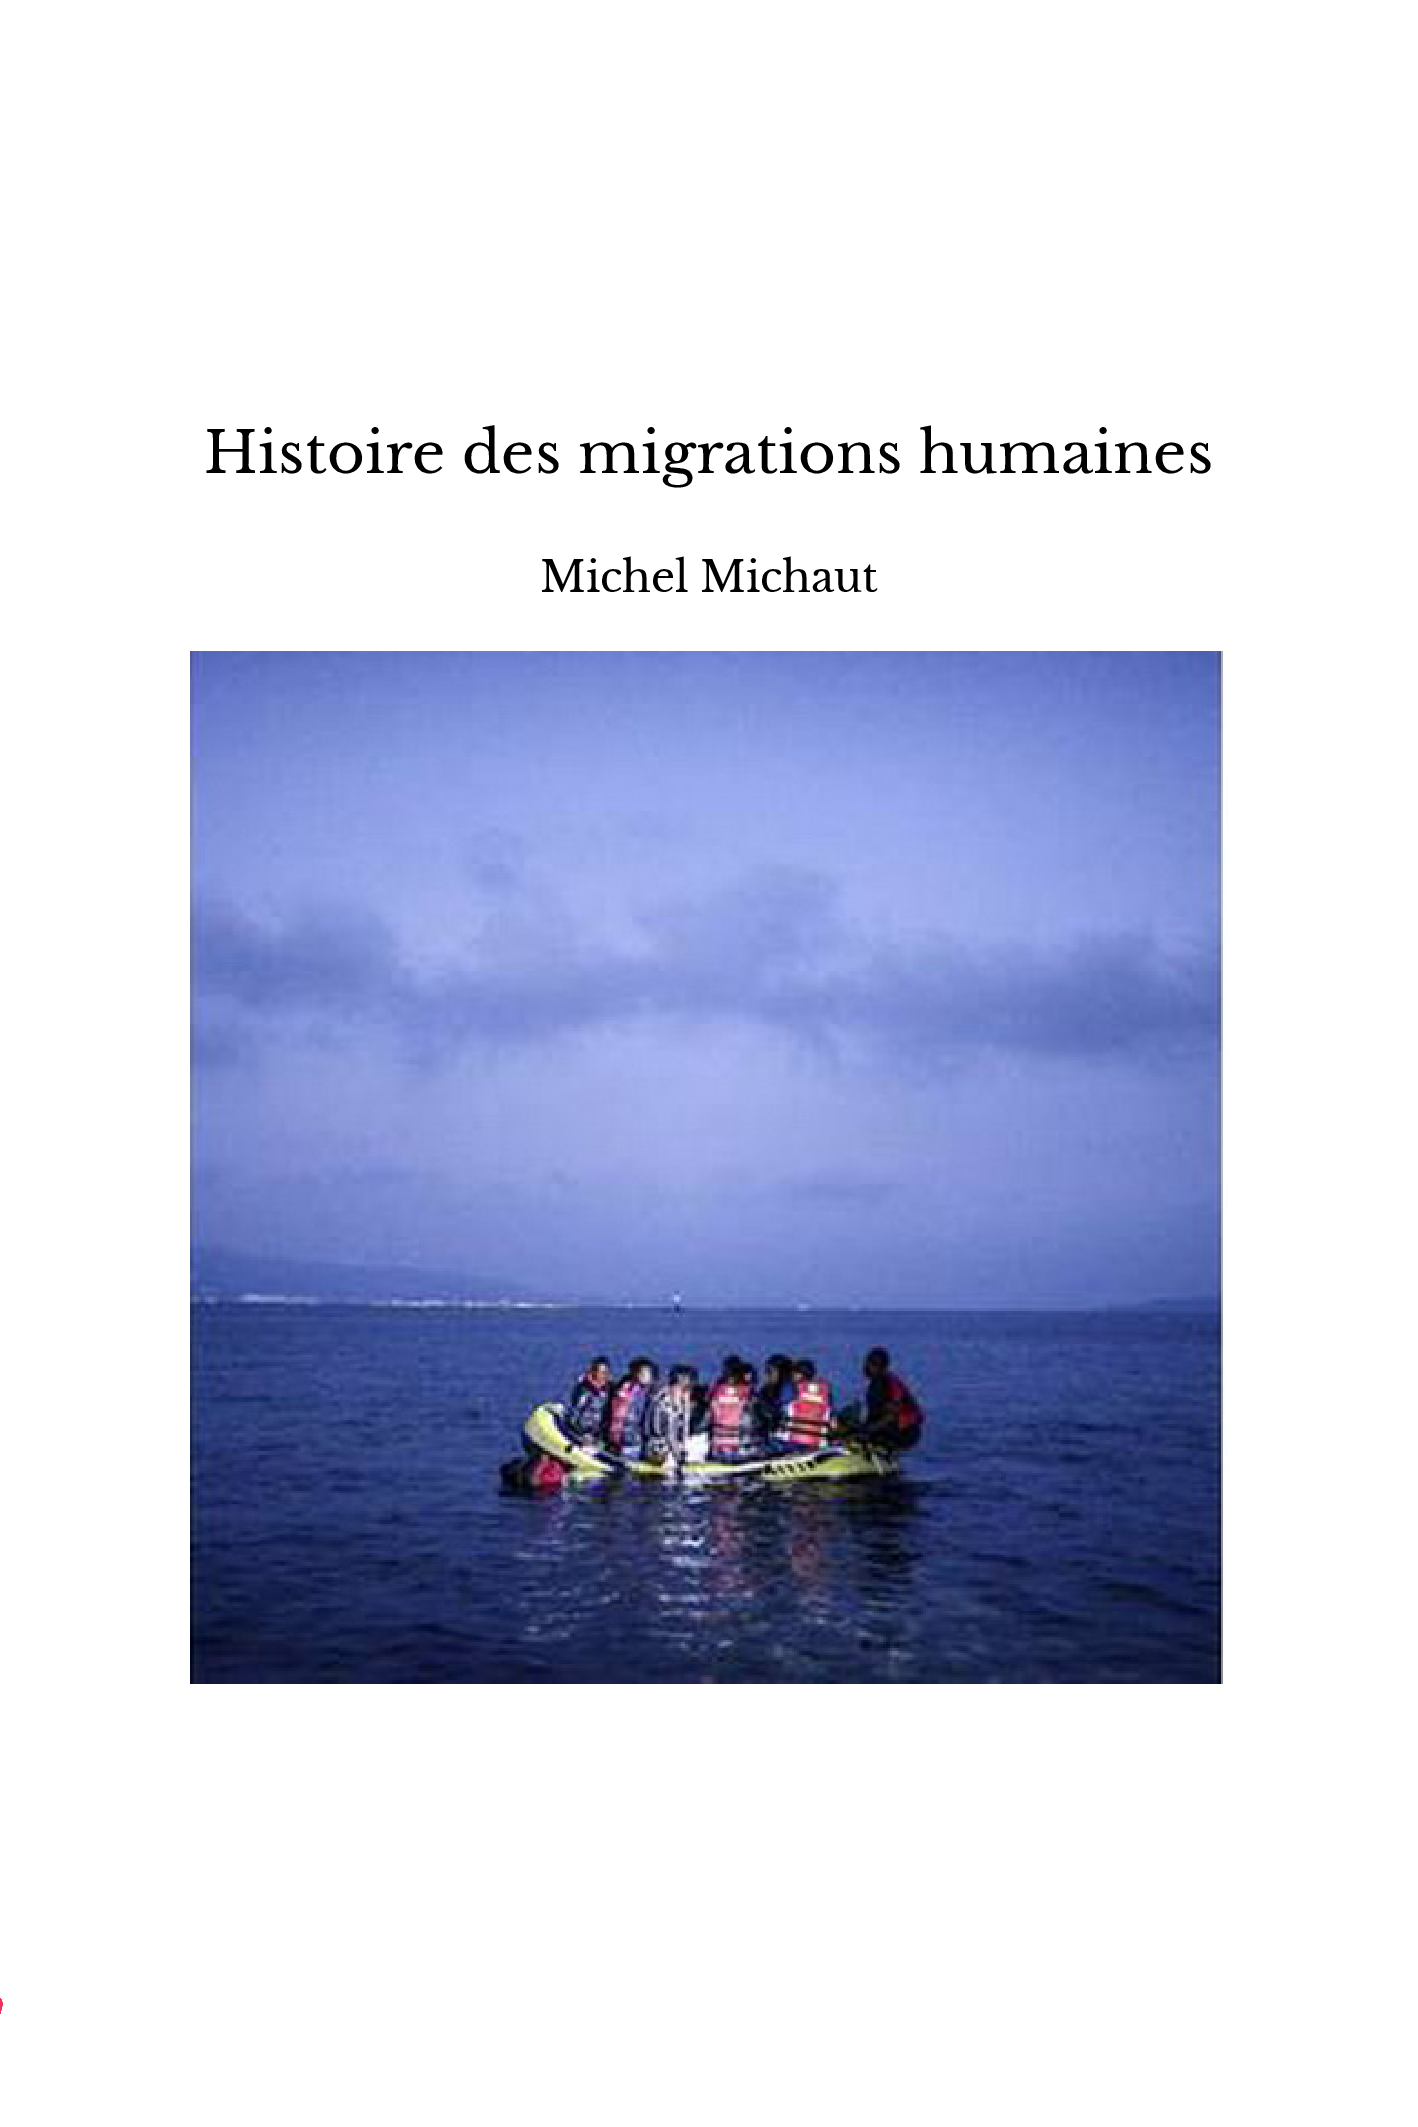 Histoire des migrations humaines